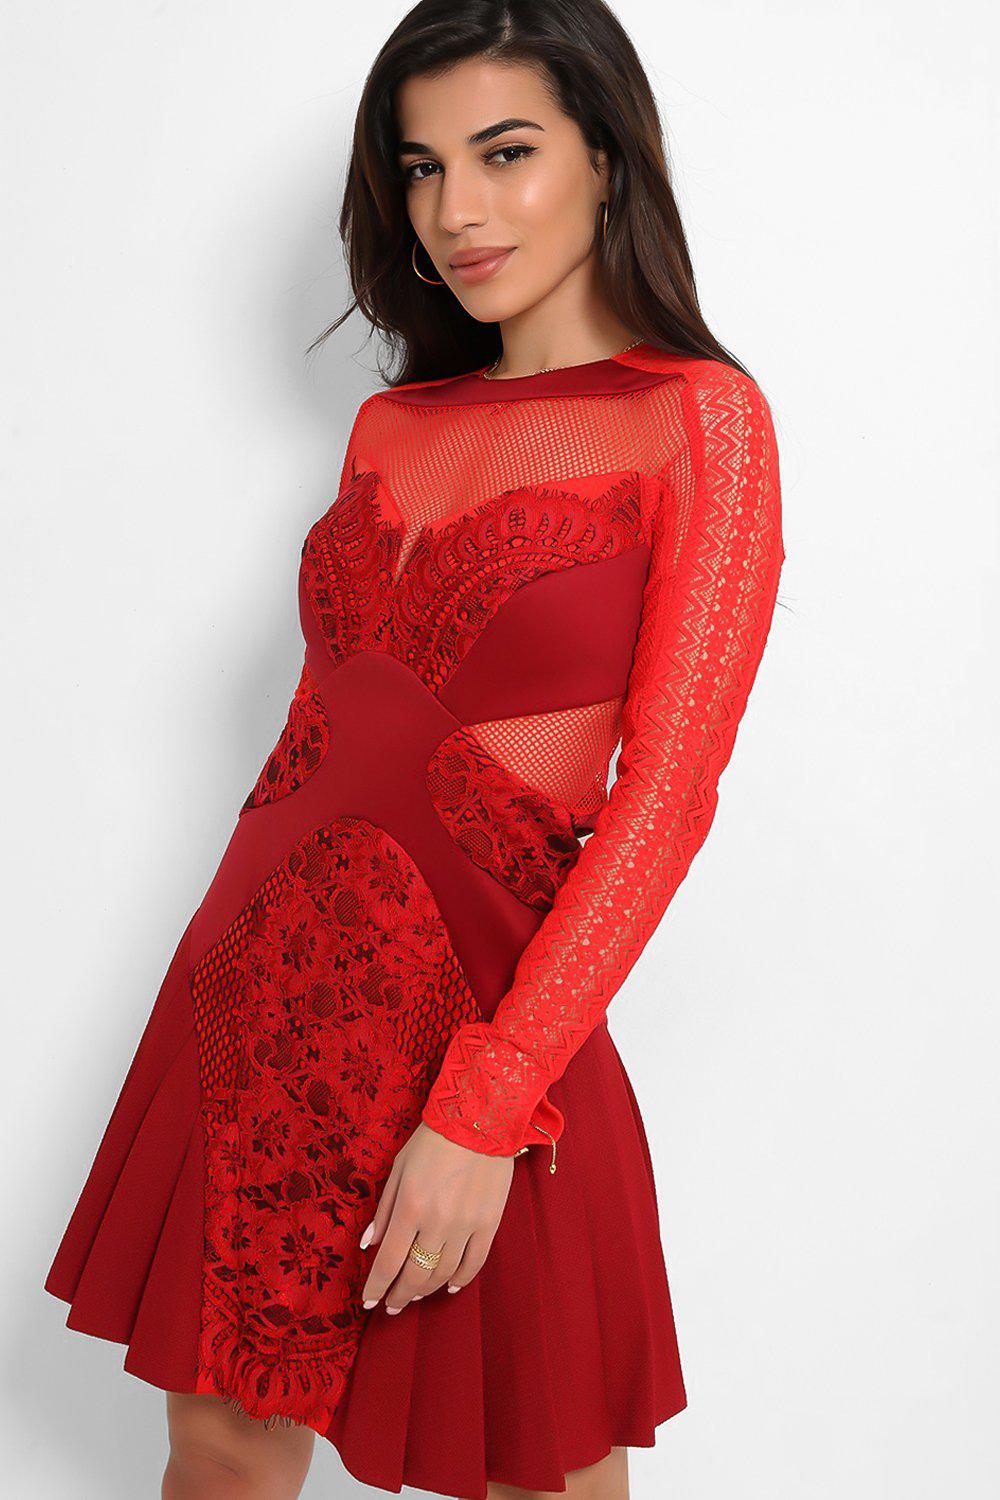 red mesh overlay dress